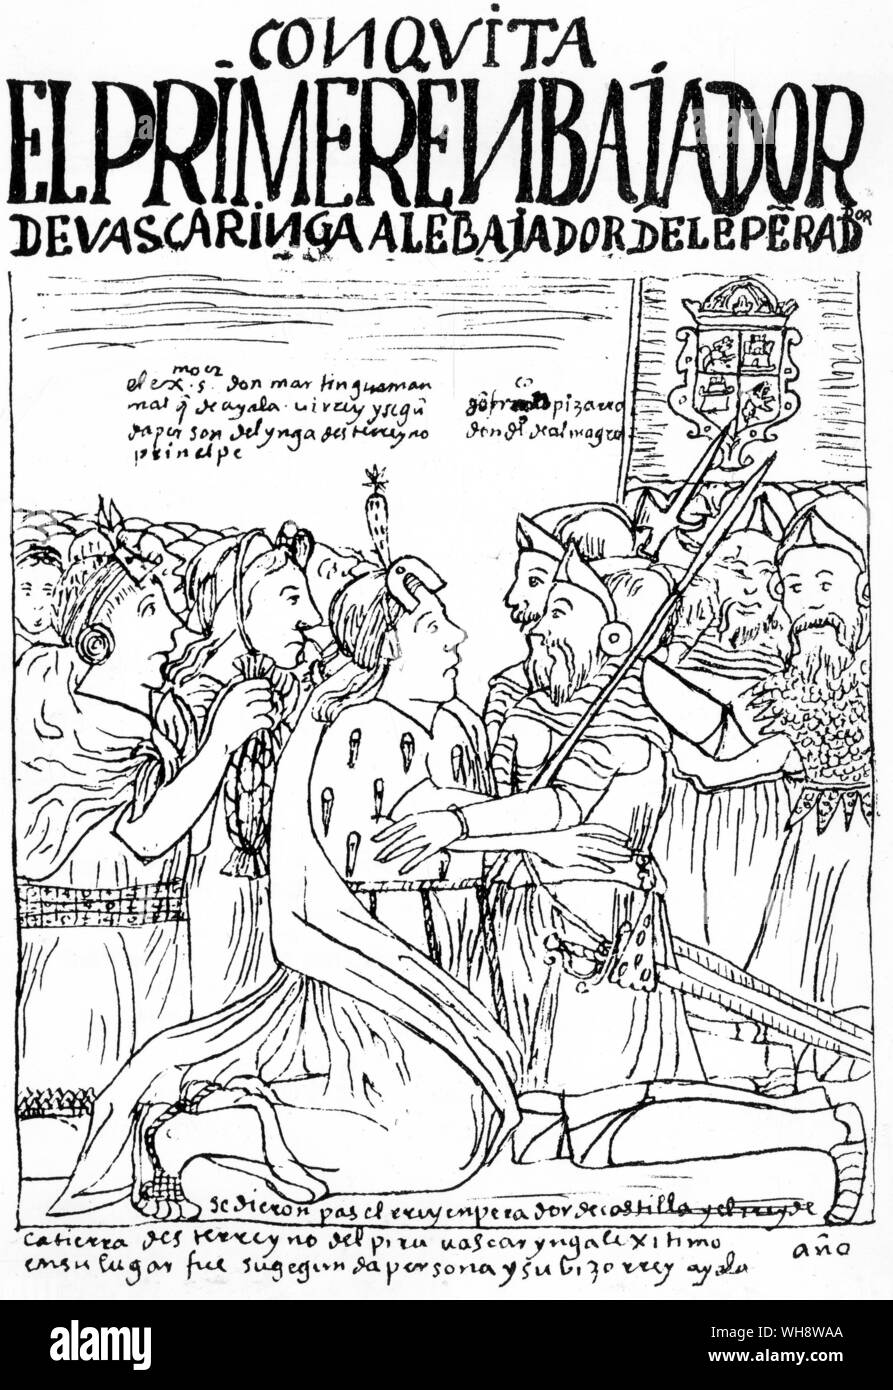 Pizarro imposti i patti di alleanza su capi locali. Poma de Ayala. Codex peruviana intitolata "Nueva Coronica y Buen Gobierno", compilata da Felipe Huaman, Poma de Ayala, completato nel 1613 Foto Stock